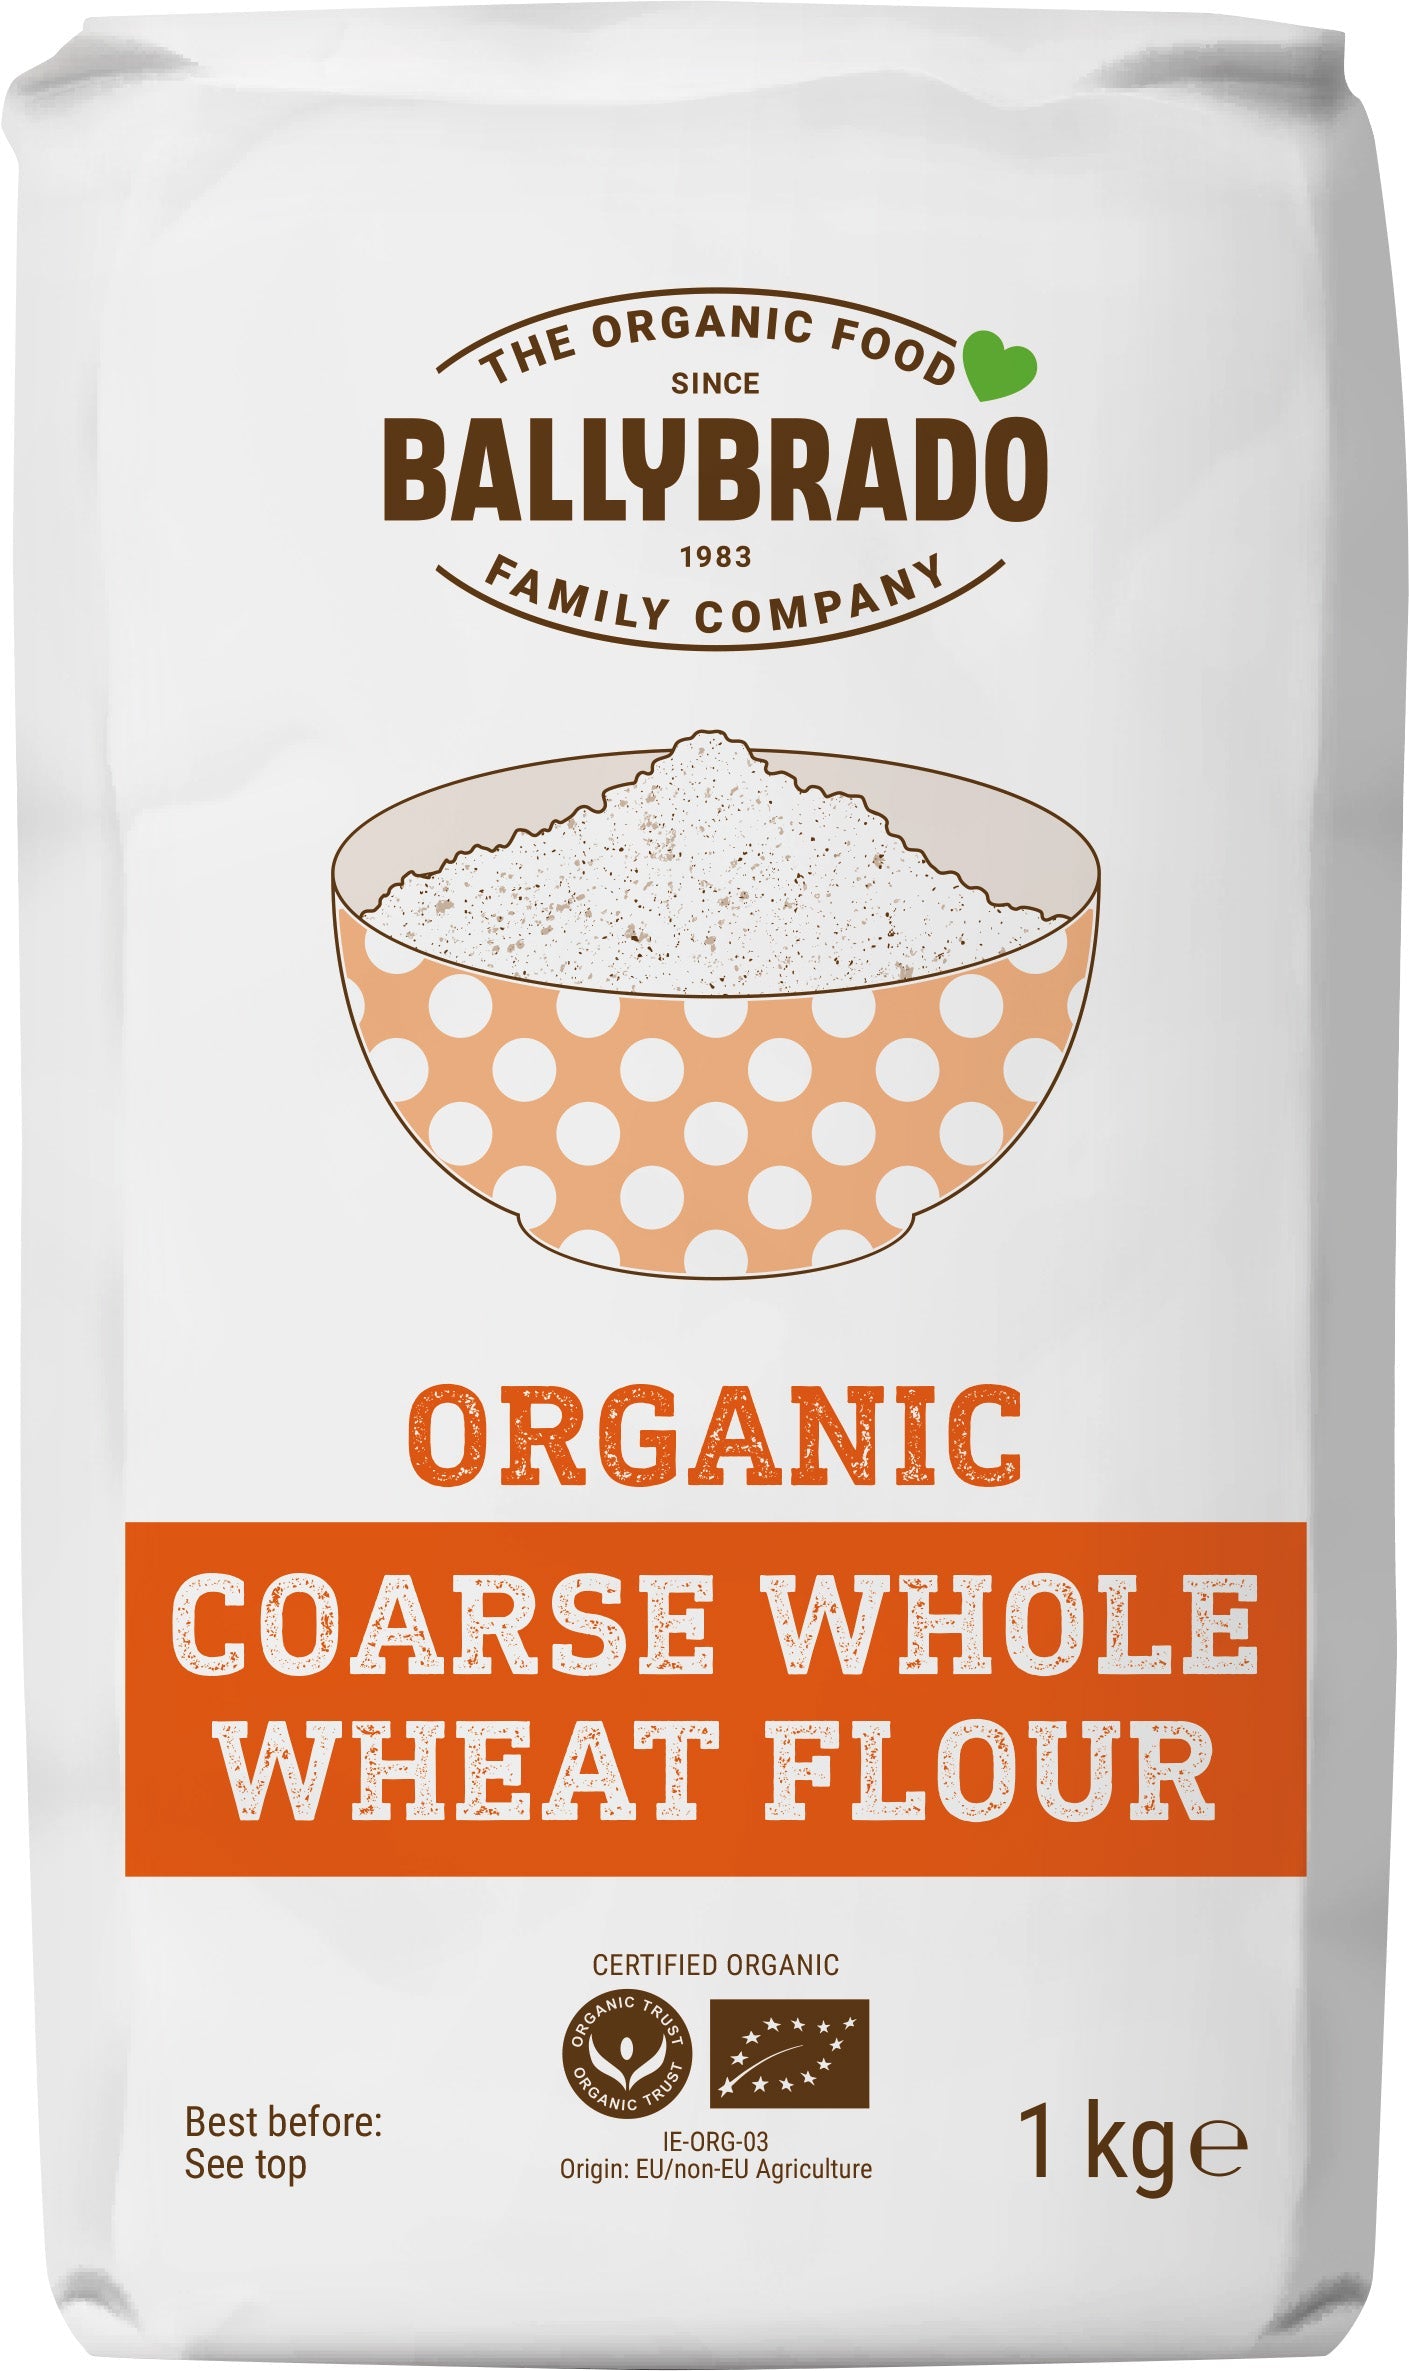 Wheat Flour Coarse (Org) 21631A